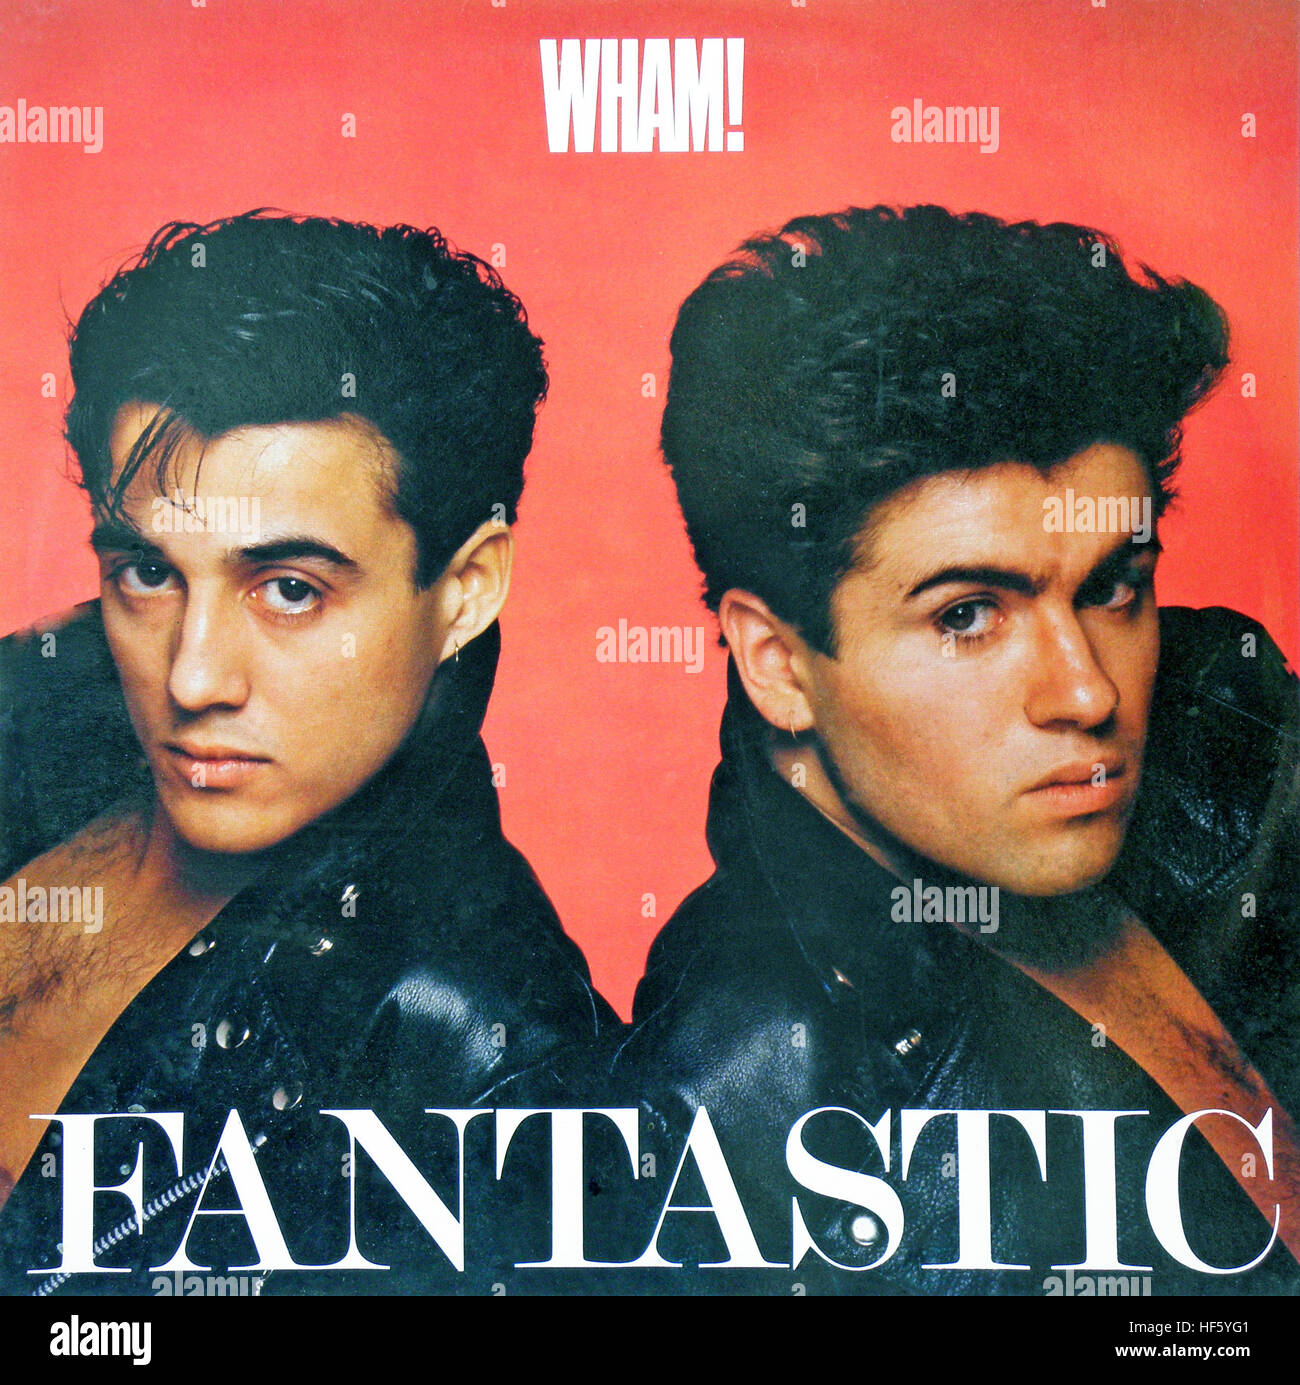 Wham ! 'LP' fantastique, disque, George Michael et Andrew Ridgeley, 1983. Banque D'Images